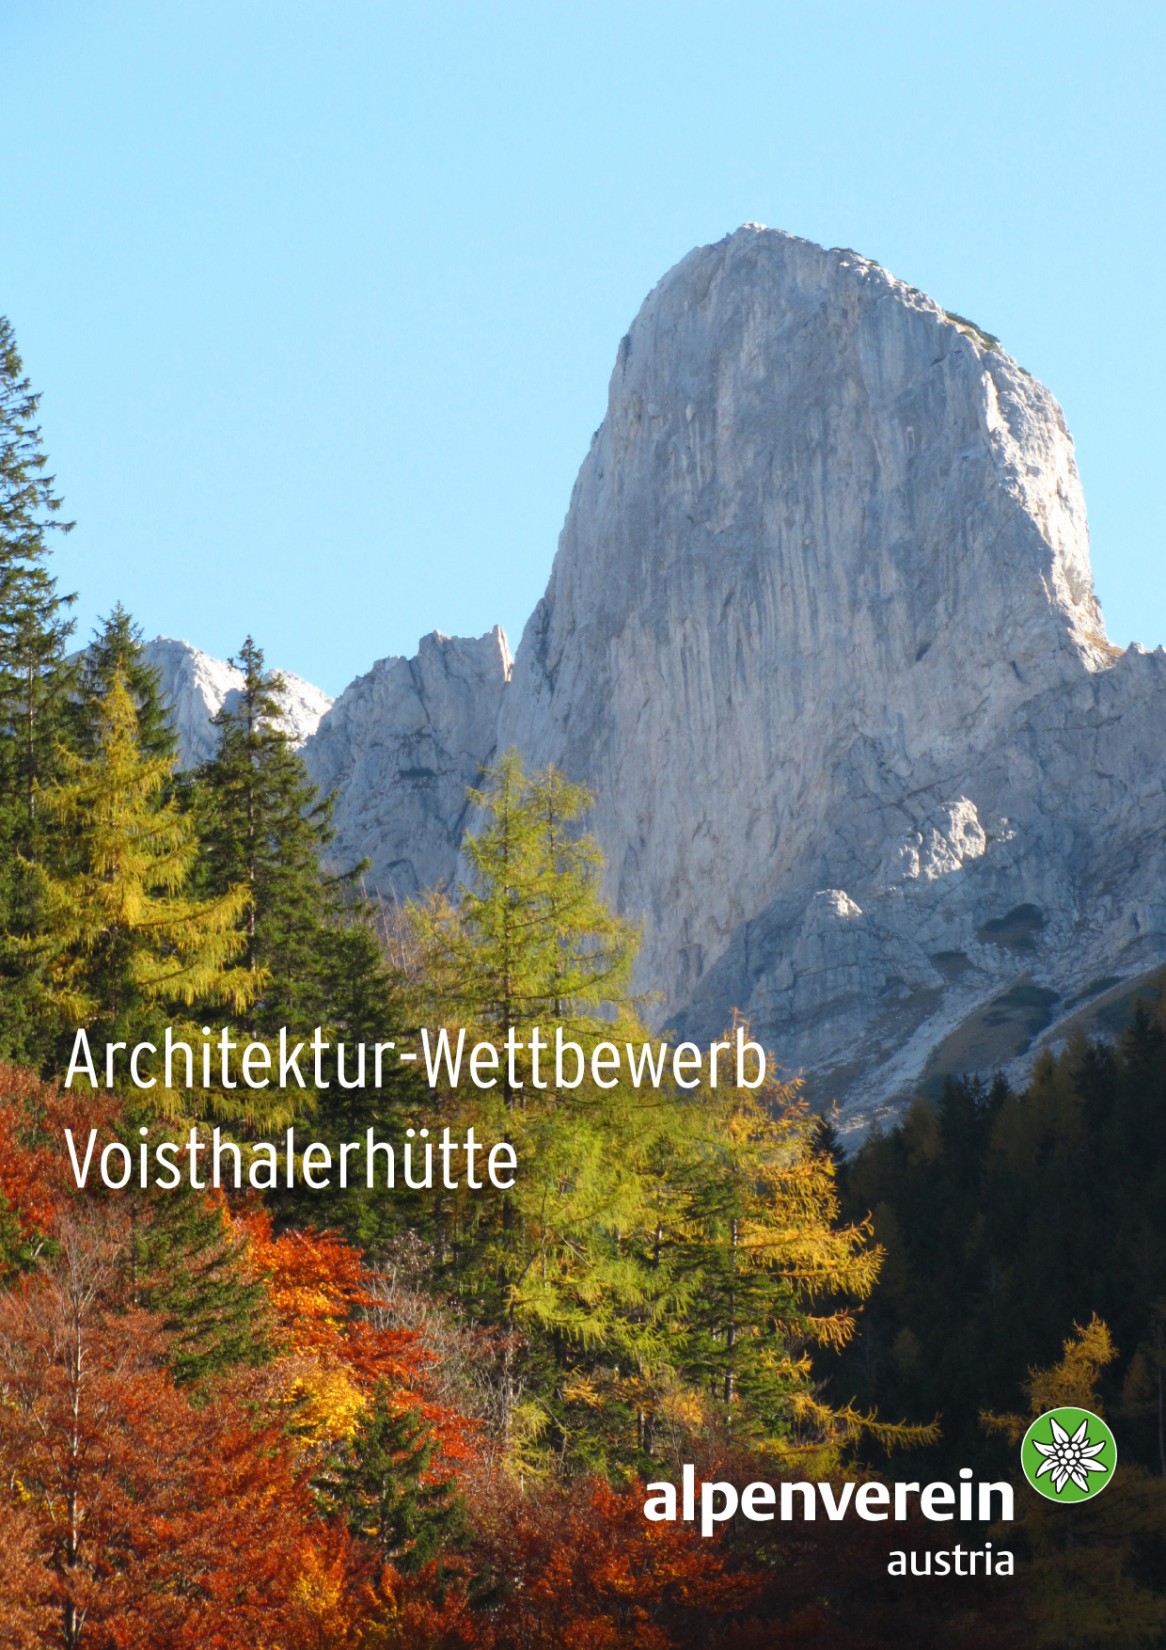 Architekturwettbewerb Voisthalerhütte